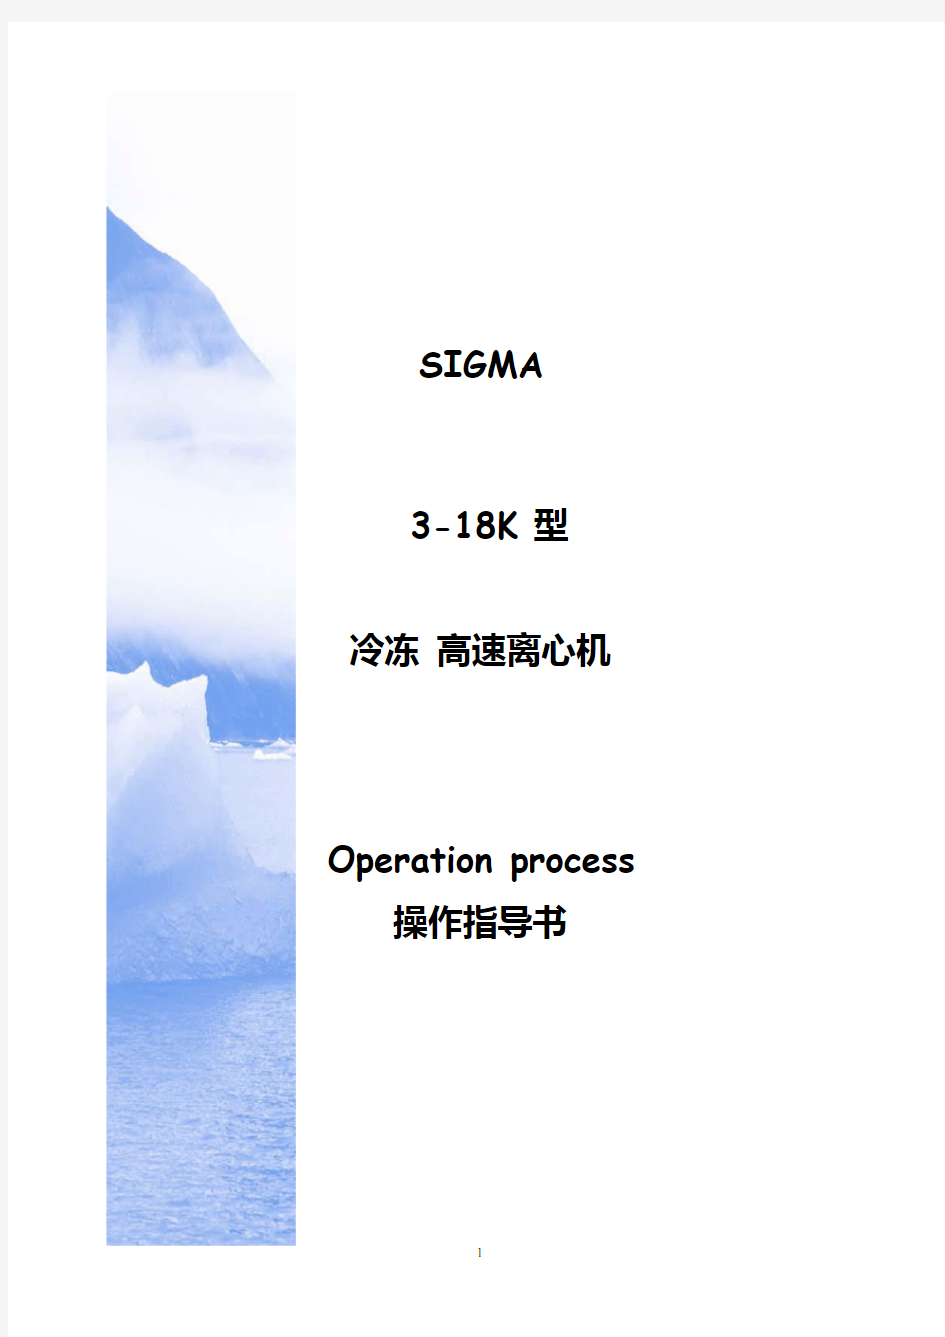 Sigma 3-18K 离心机操作指导书